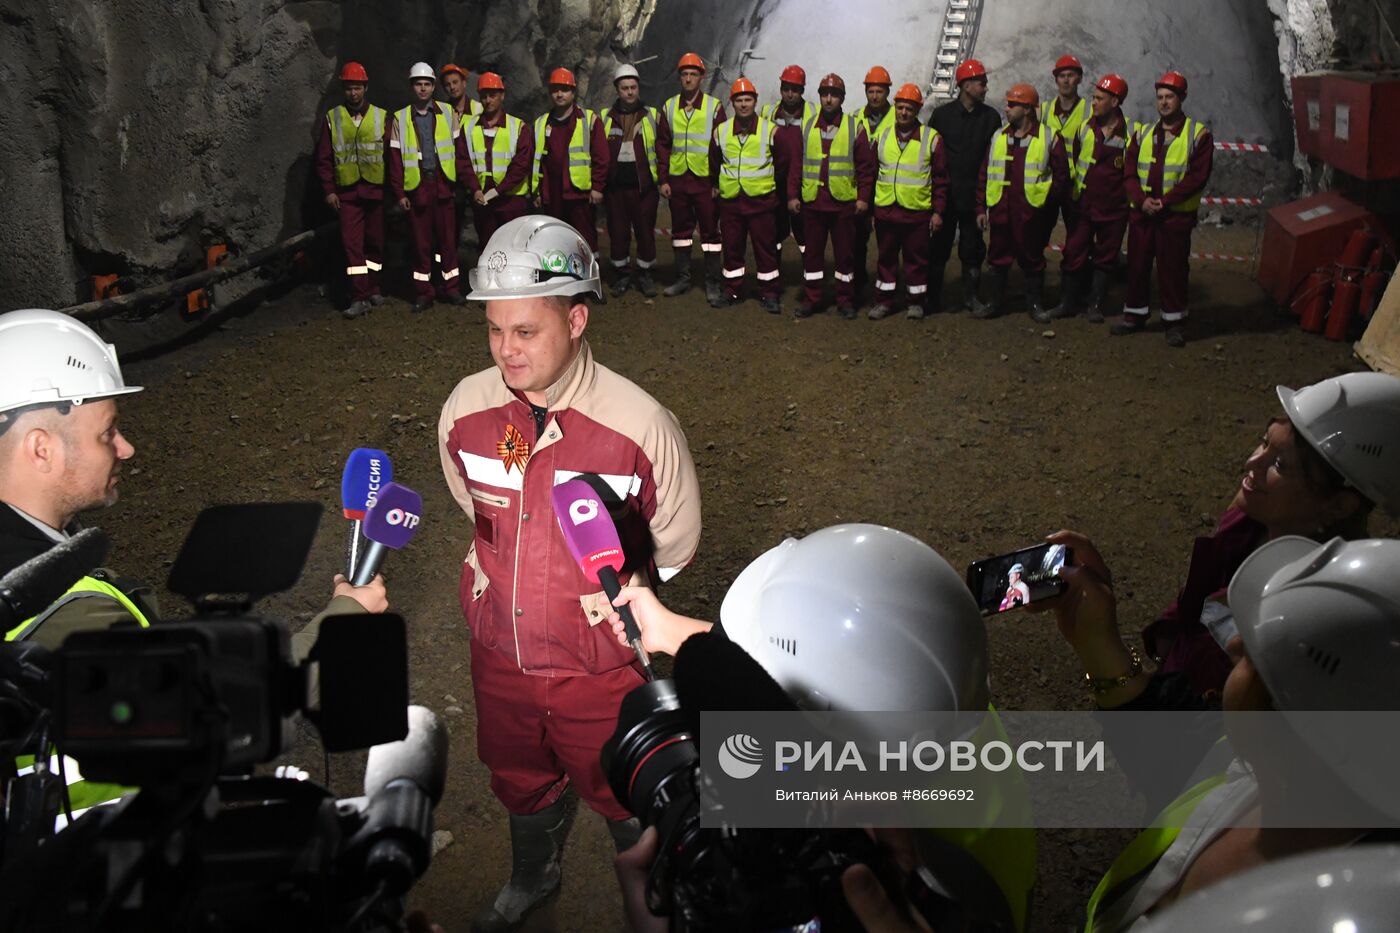 Завершение проходки тоннеля Шкотово-Смоляниново на Восточном полигоне ОАО "РЖД" 